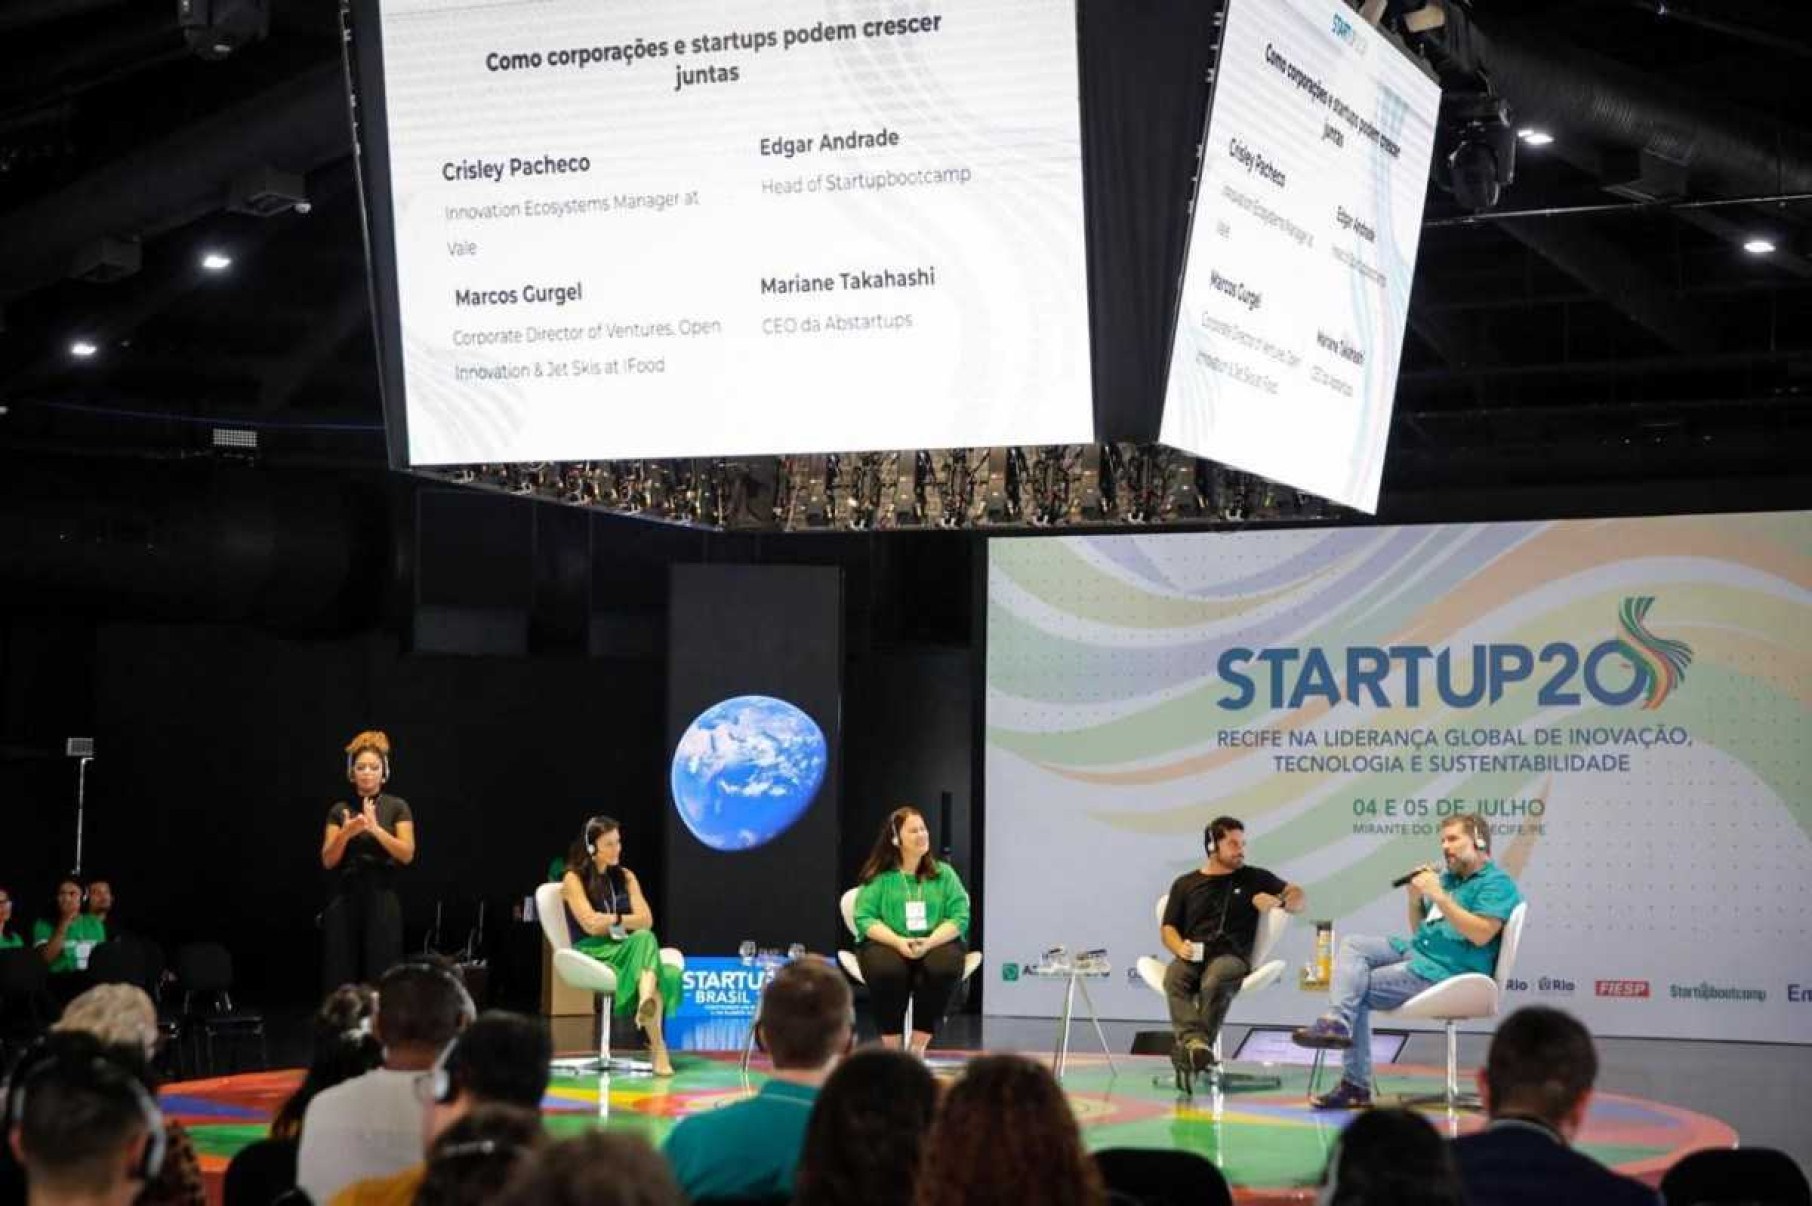 Startup20: fórum do G20 discute inovação, tecnologia e sustentabilidade 